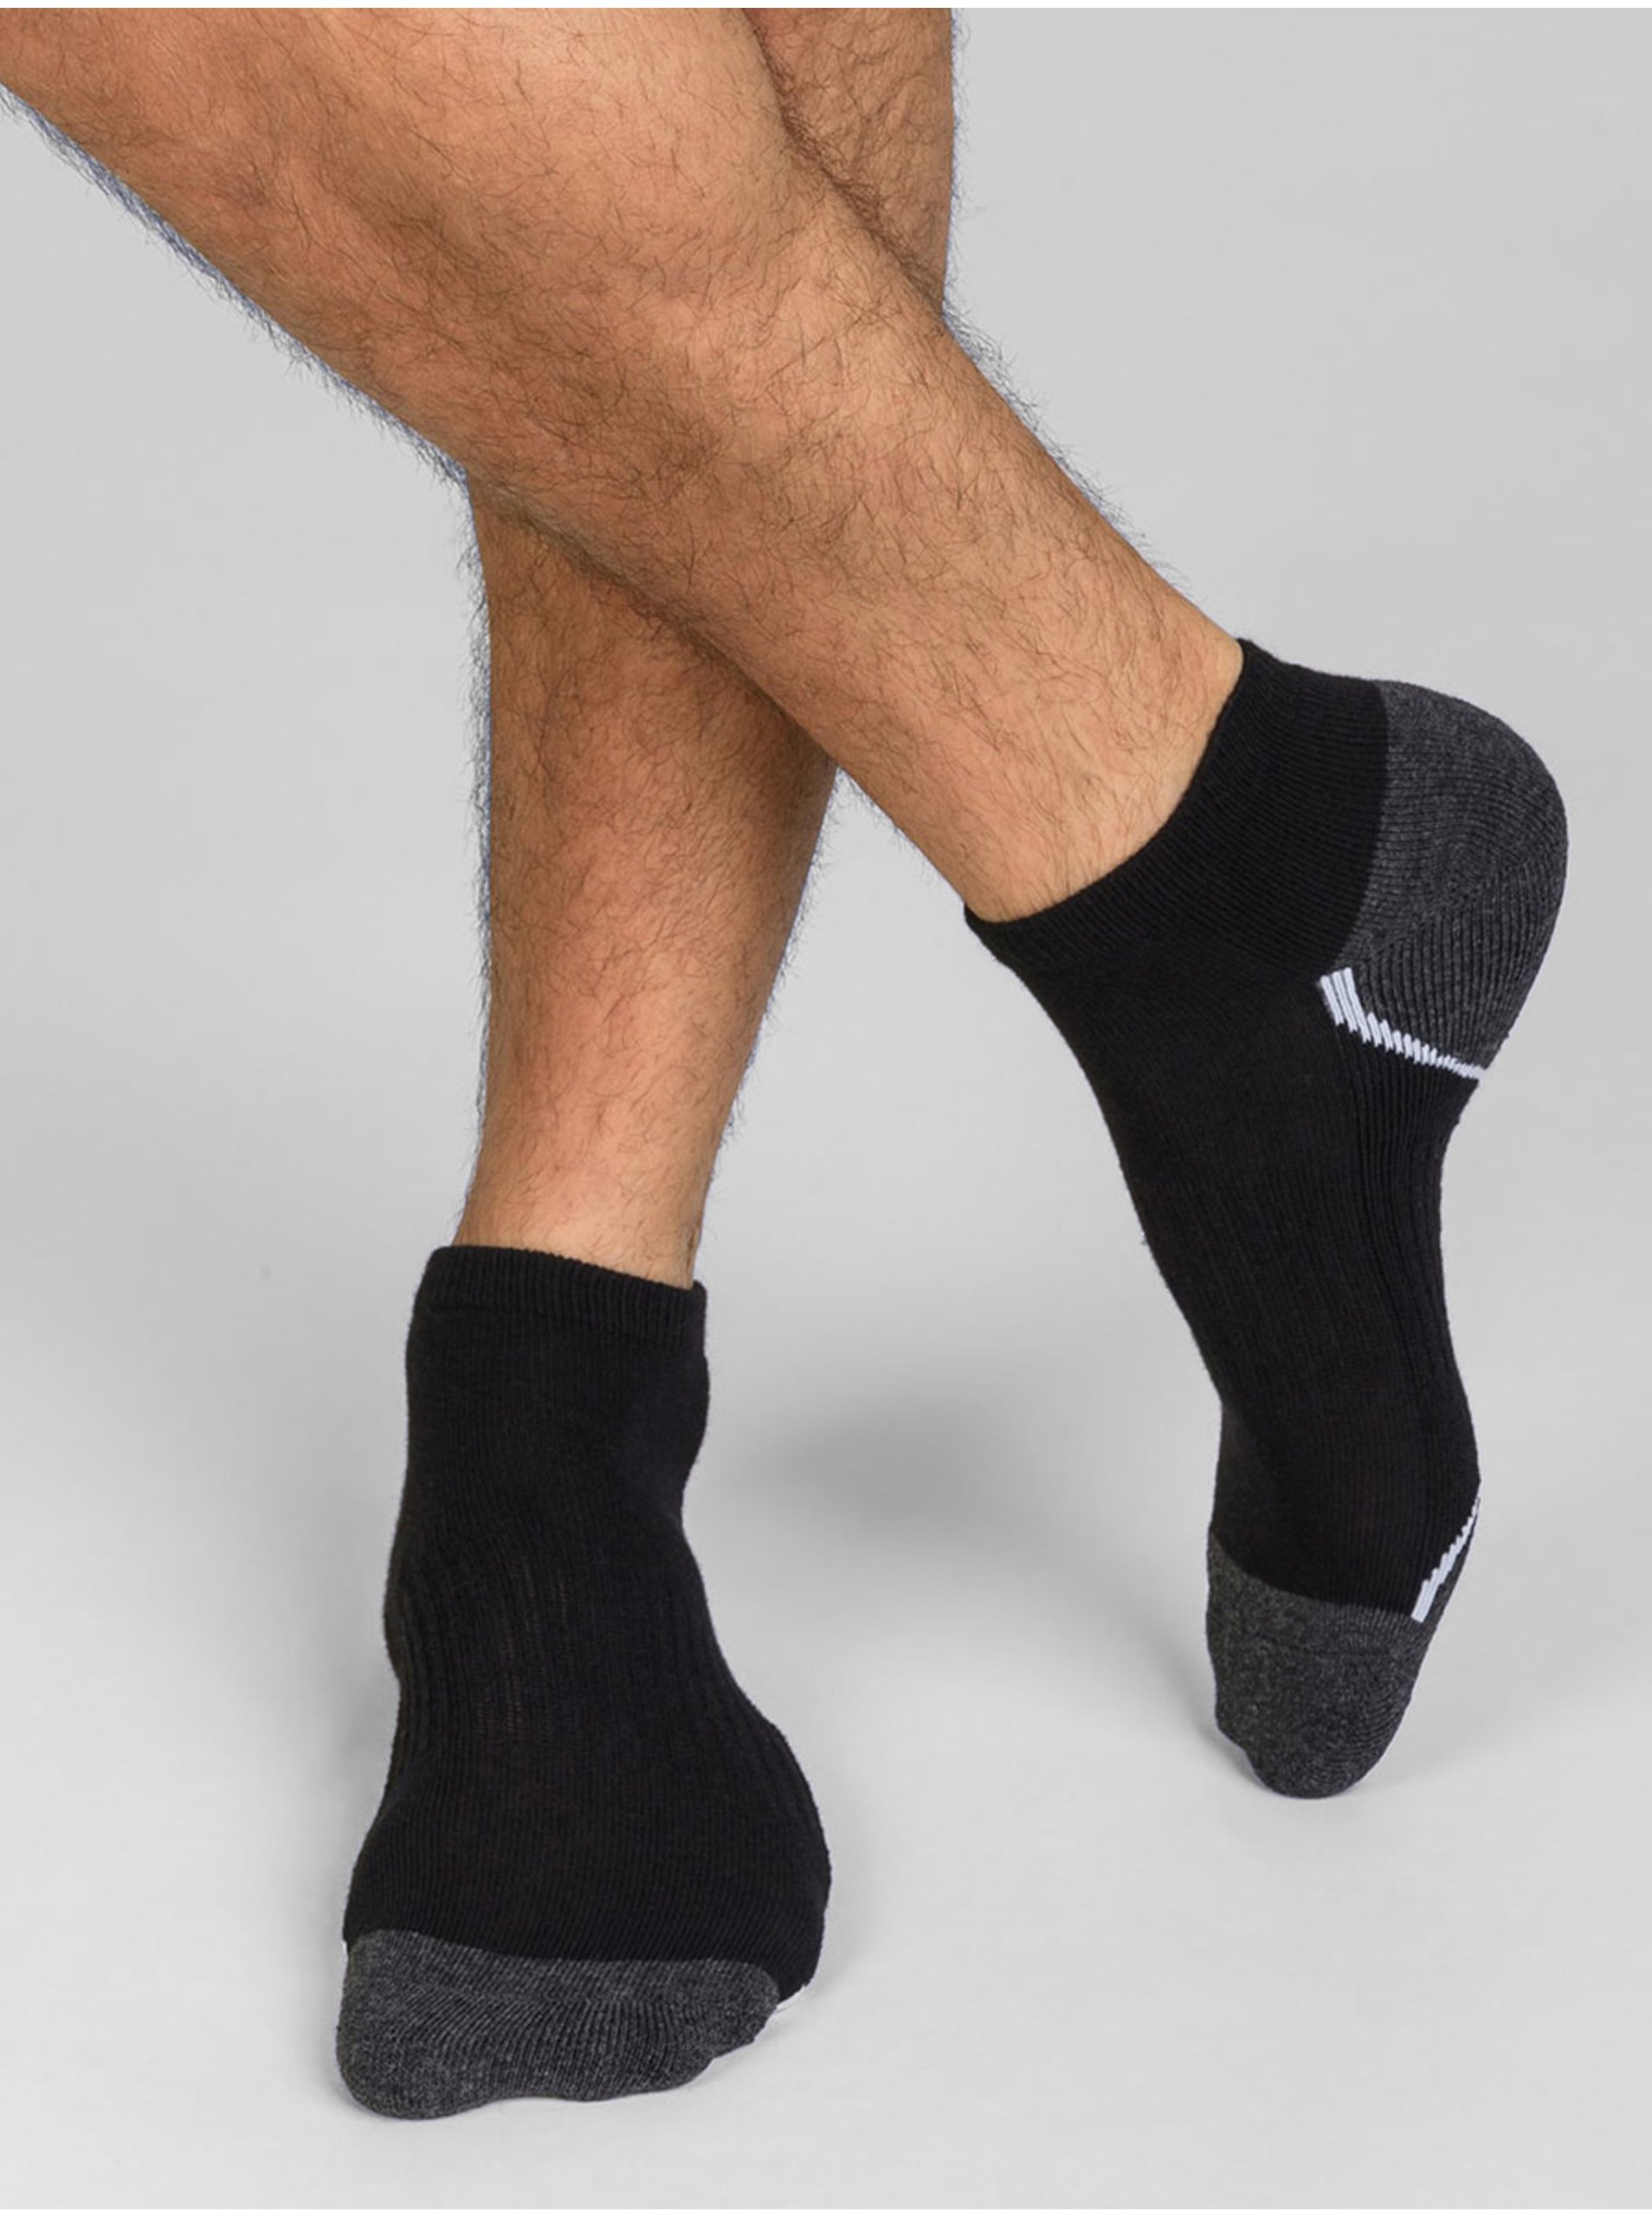 Levně Sada tří pánských sportovních ponožek v černé barvě Dim SPORT IN-SHOE 3x